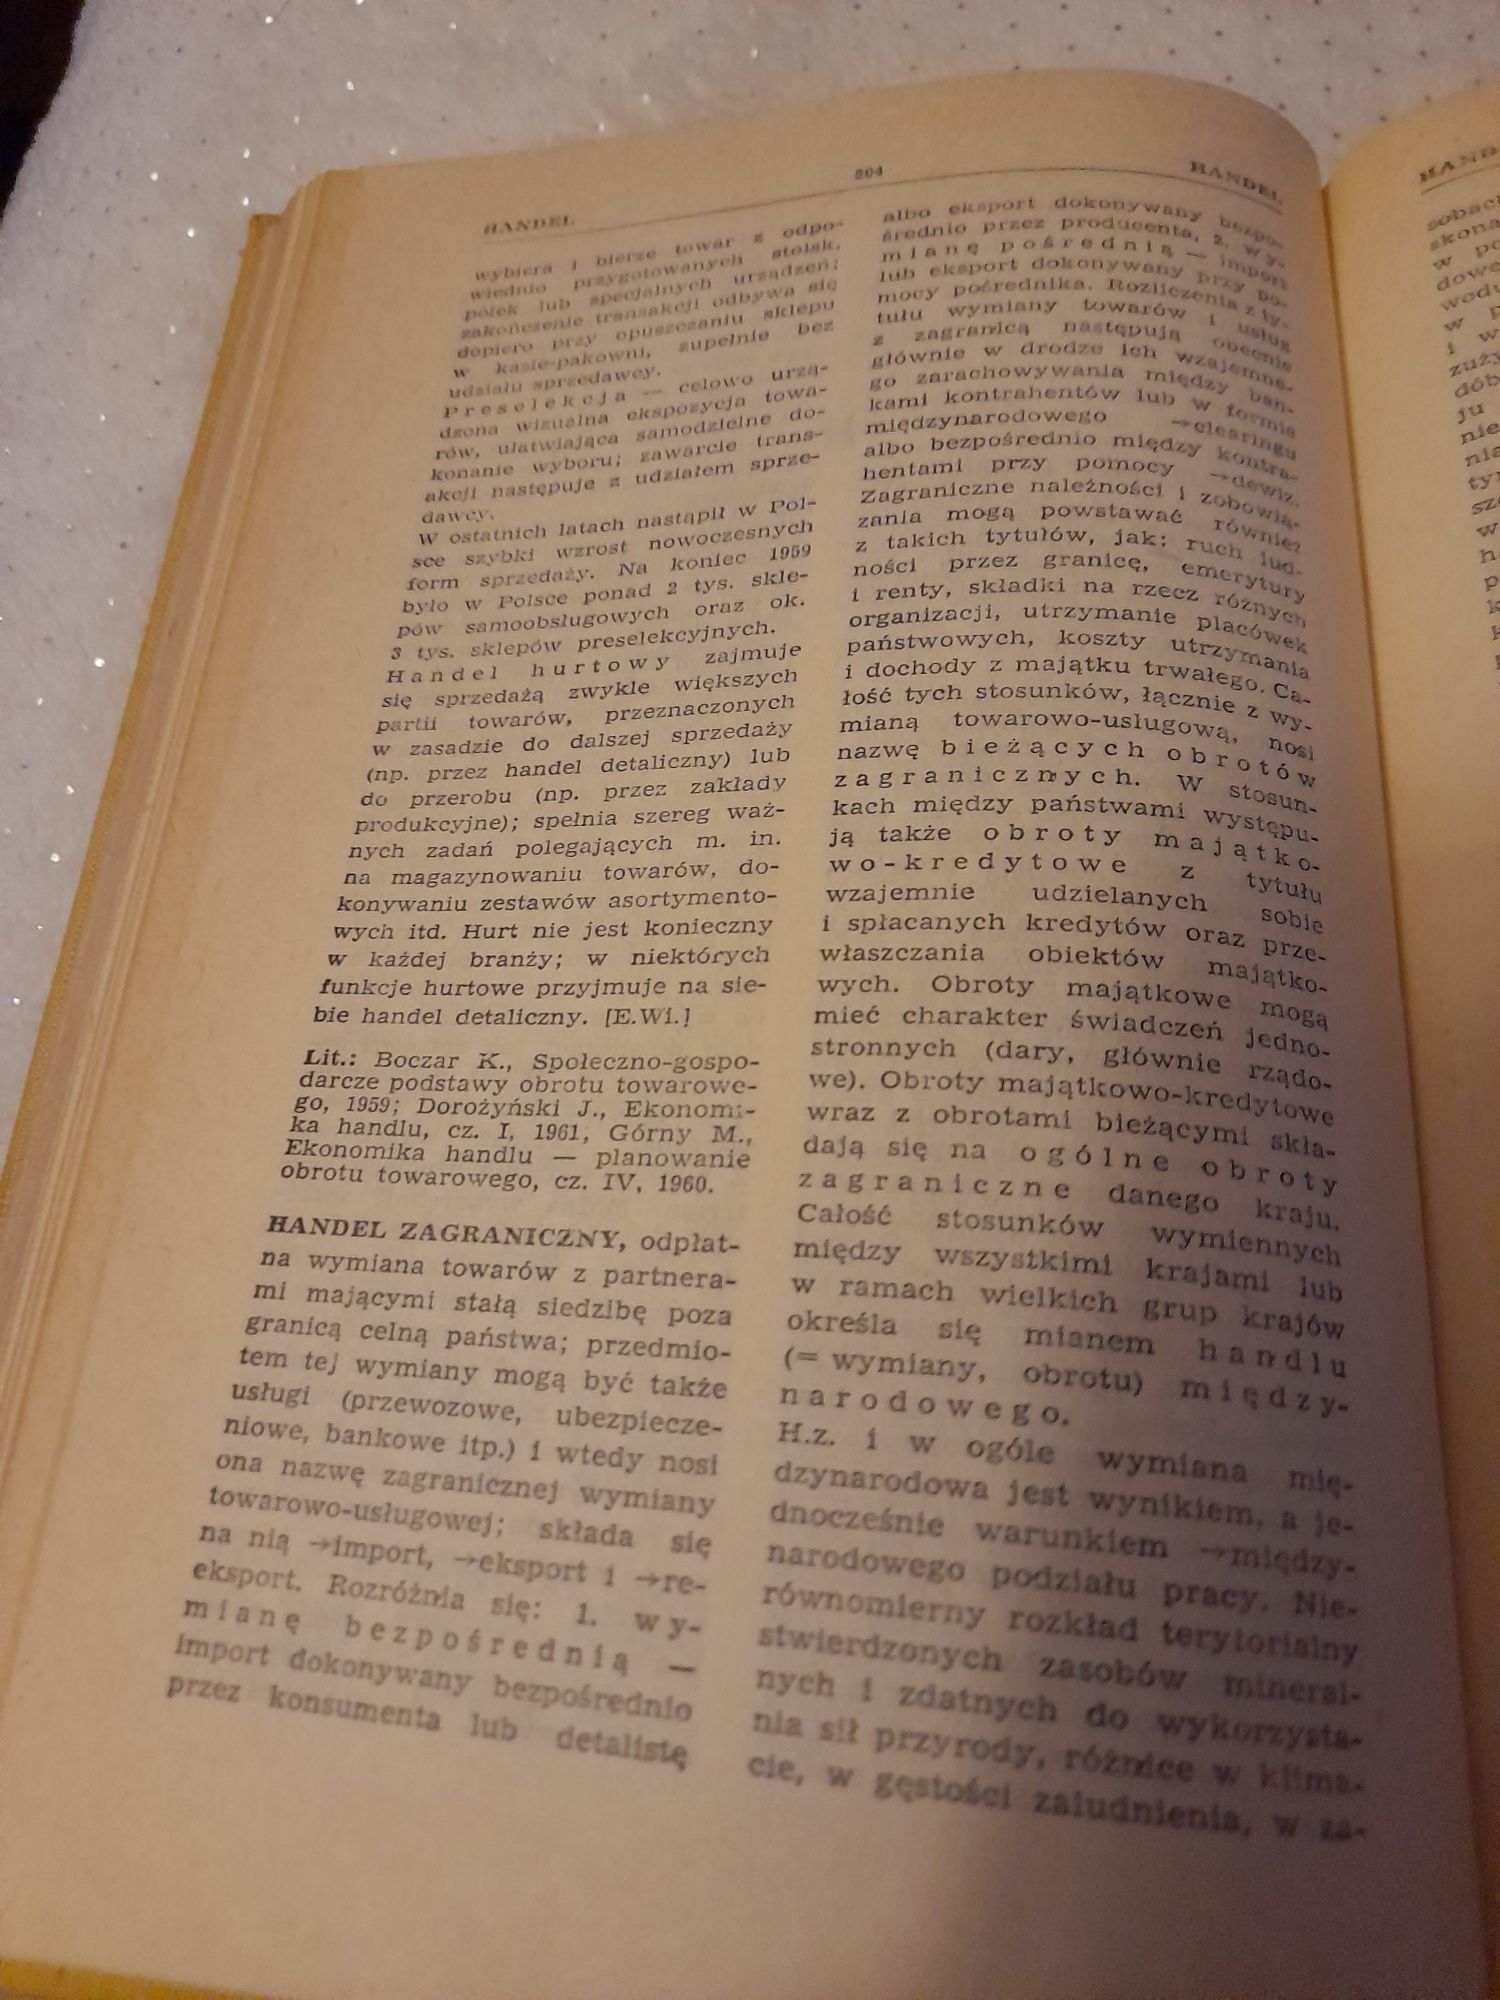 Mała encyklopedia ekonomiczna 1962 r